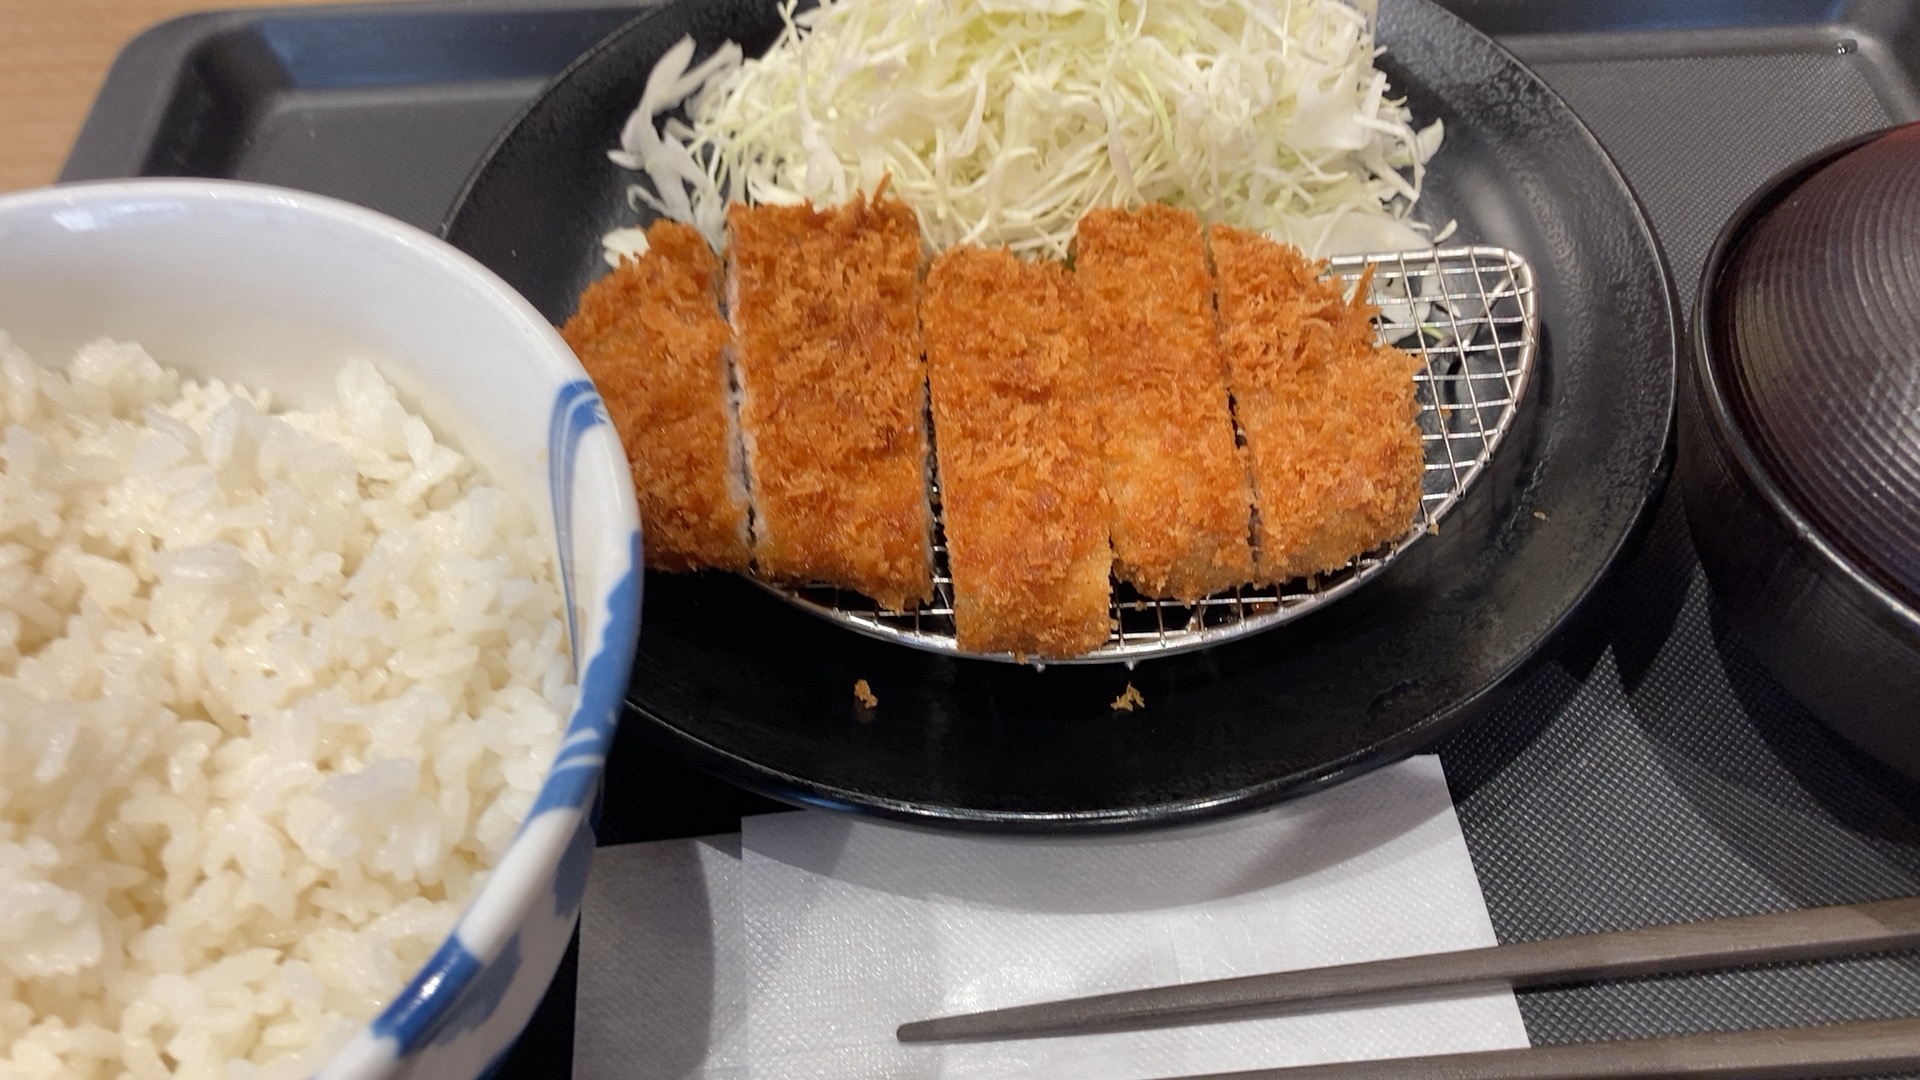 松のやの500円ロースカツ定食食べに来た